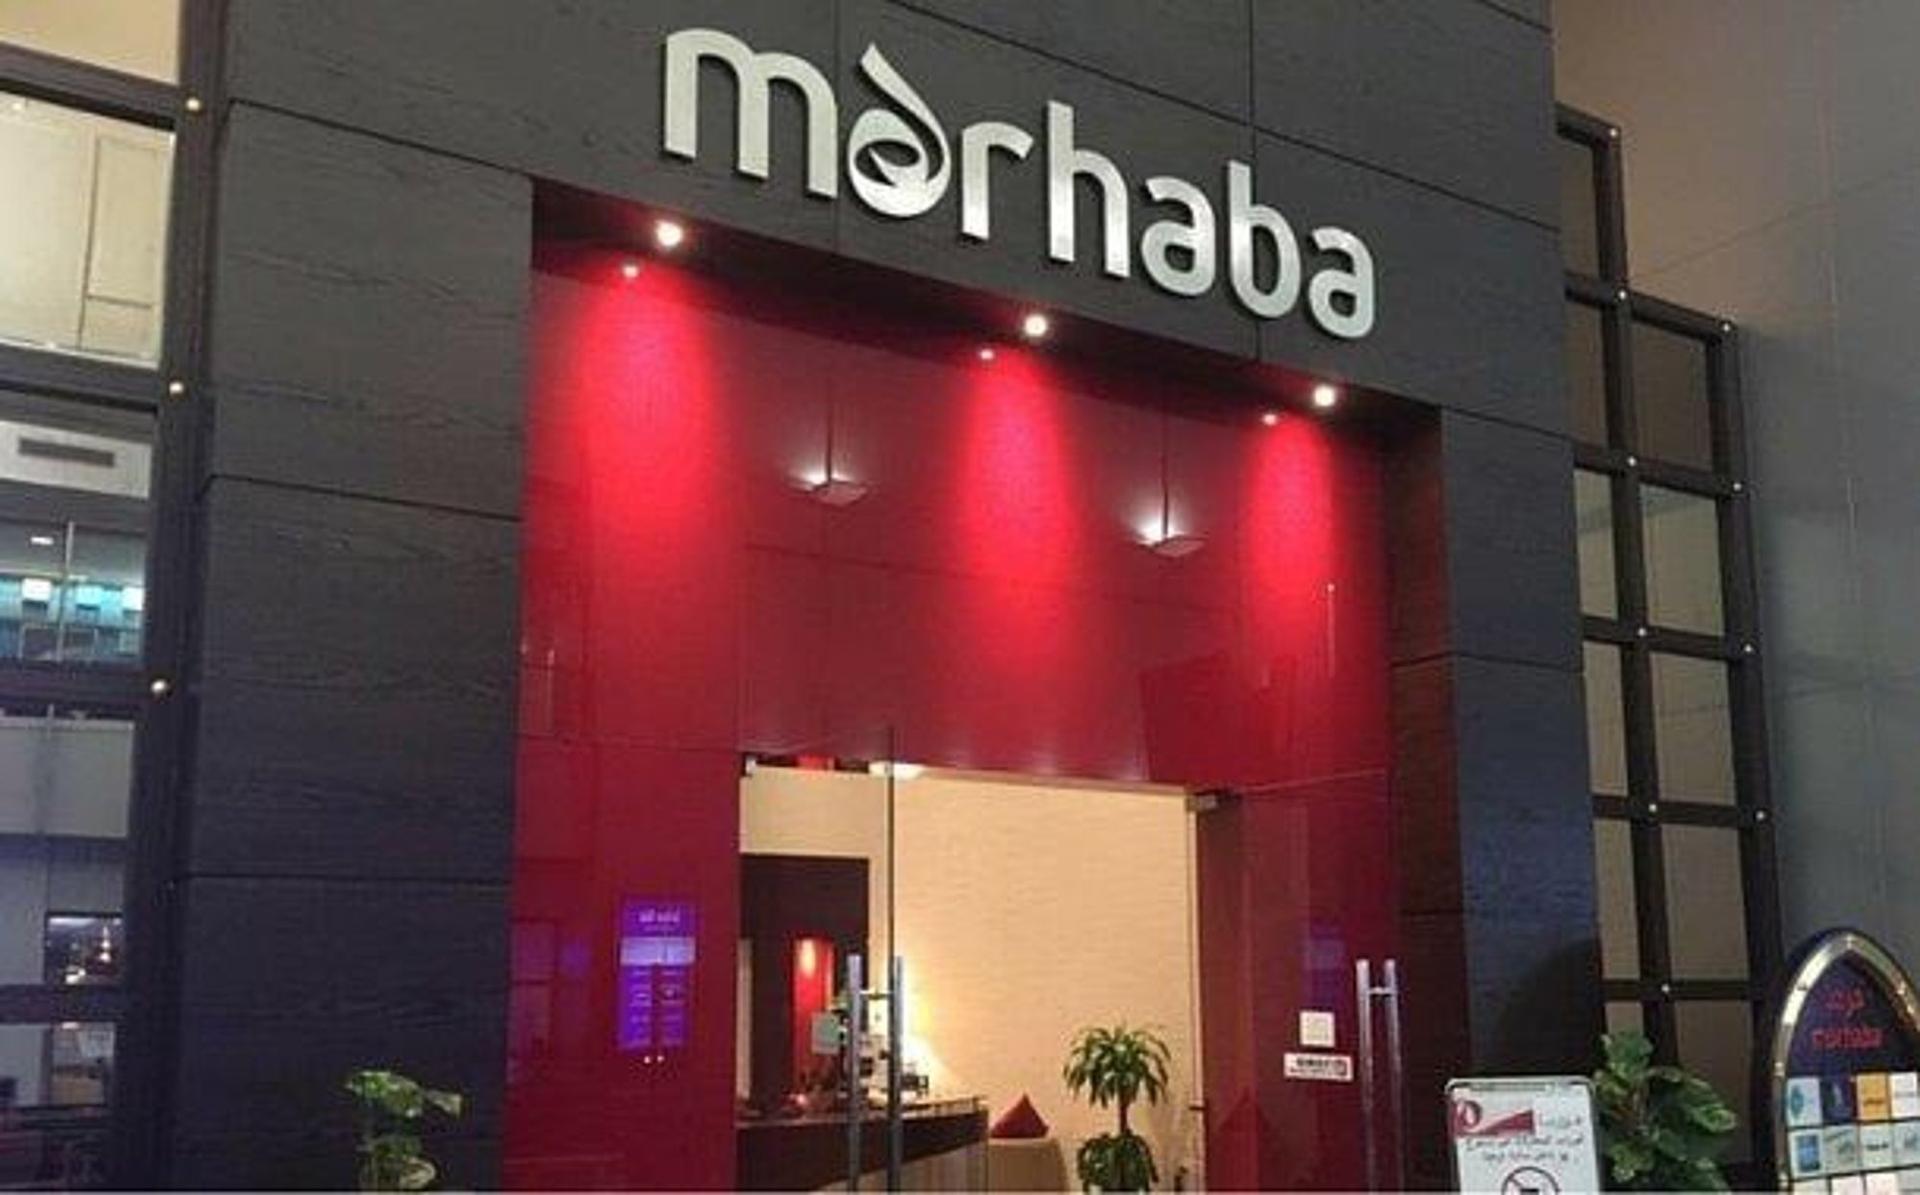 Marhaba Lounge image 15 of 64